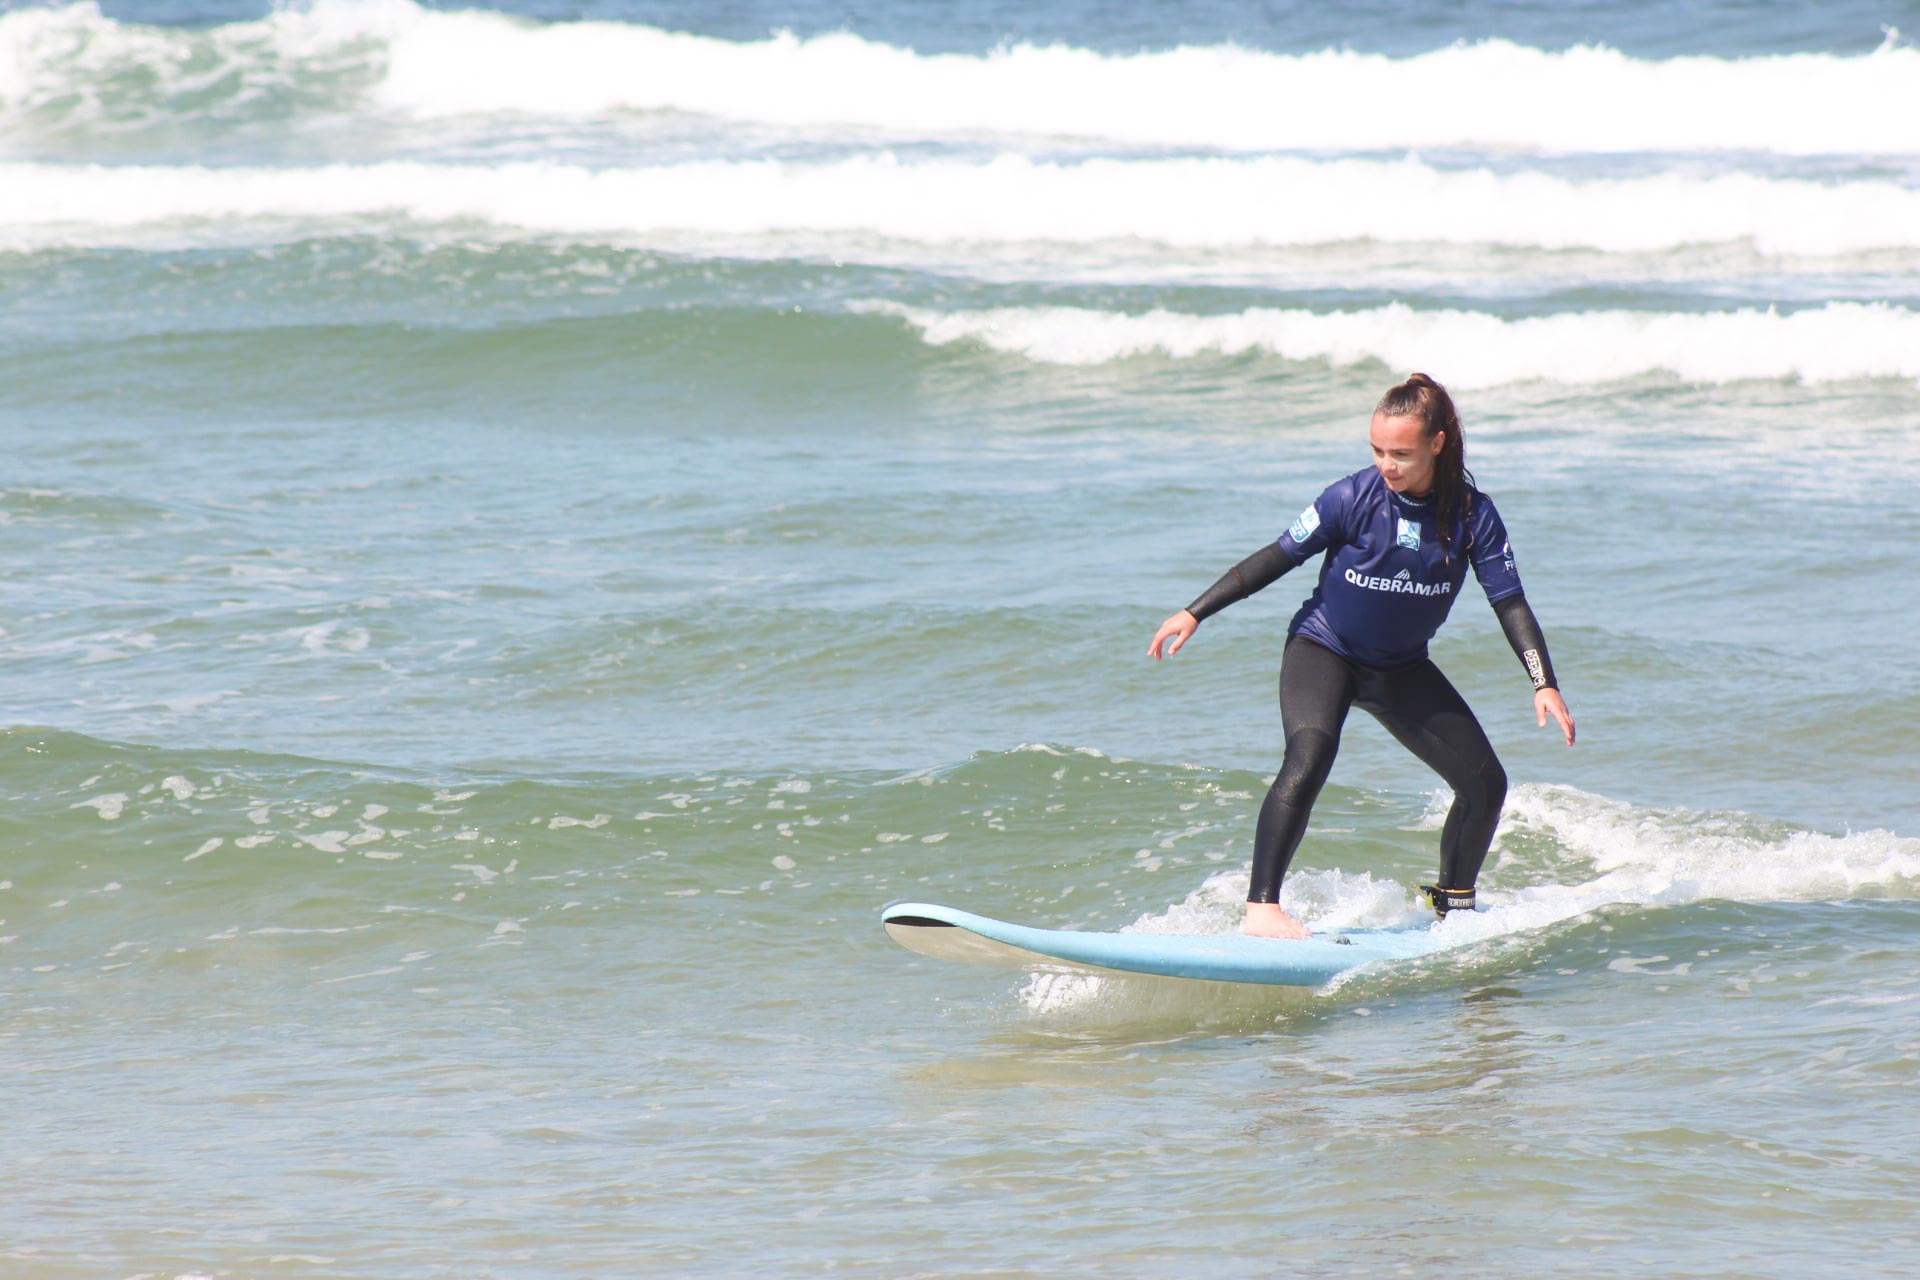 Semana do Surf - Iniciantes, com a ASA - Associação de Surf de Aveiro